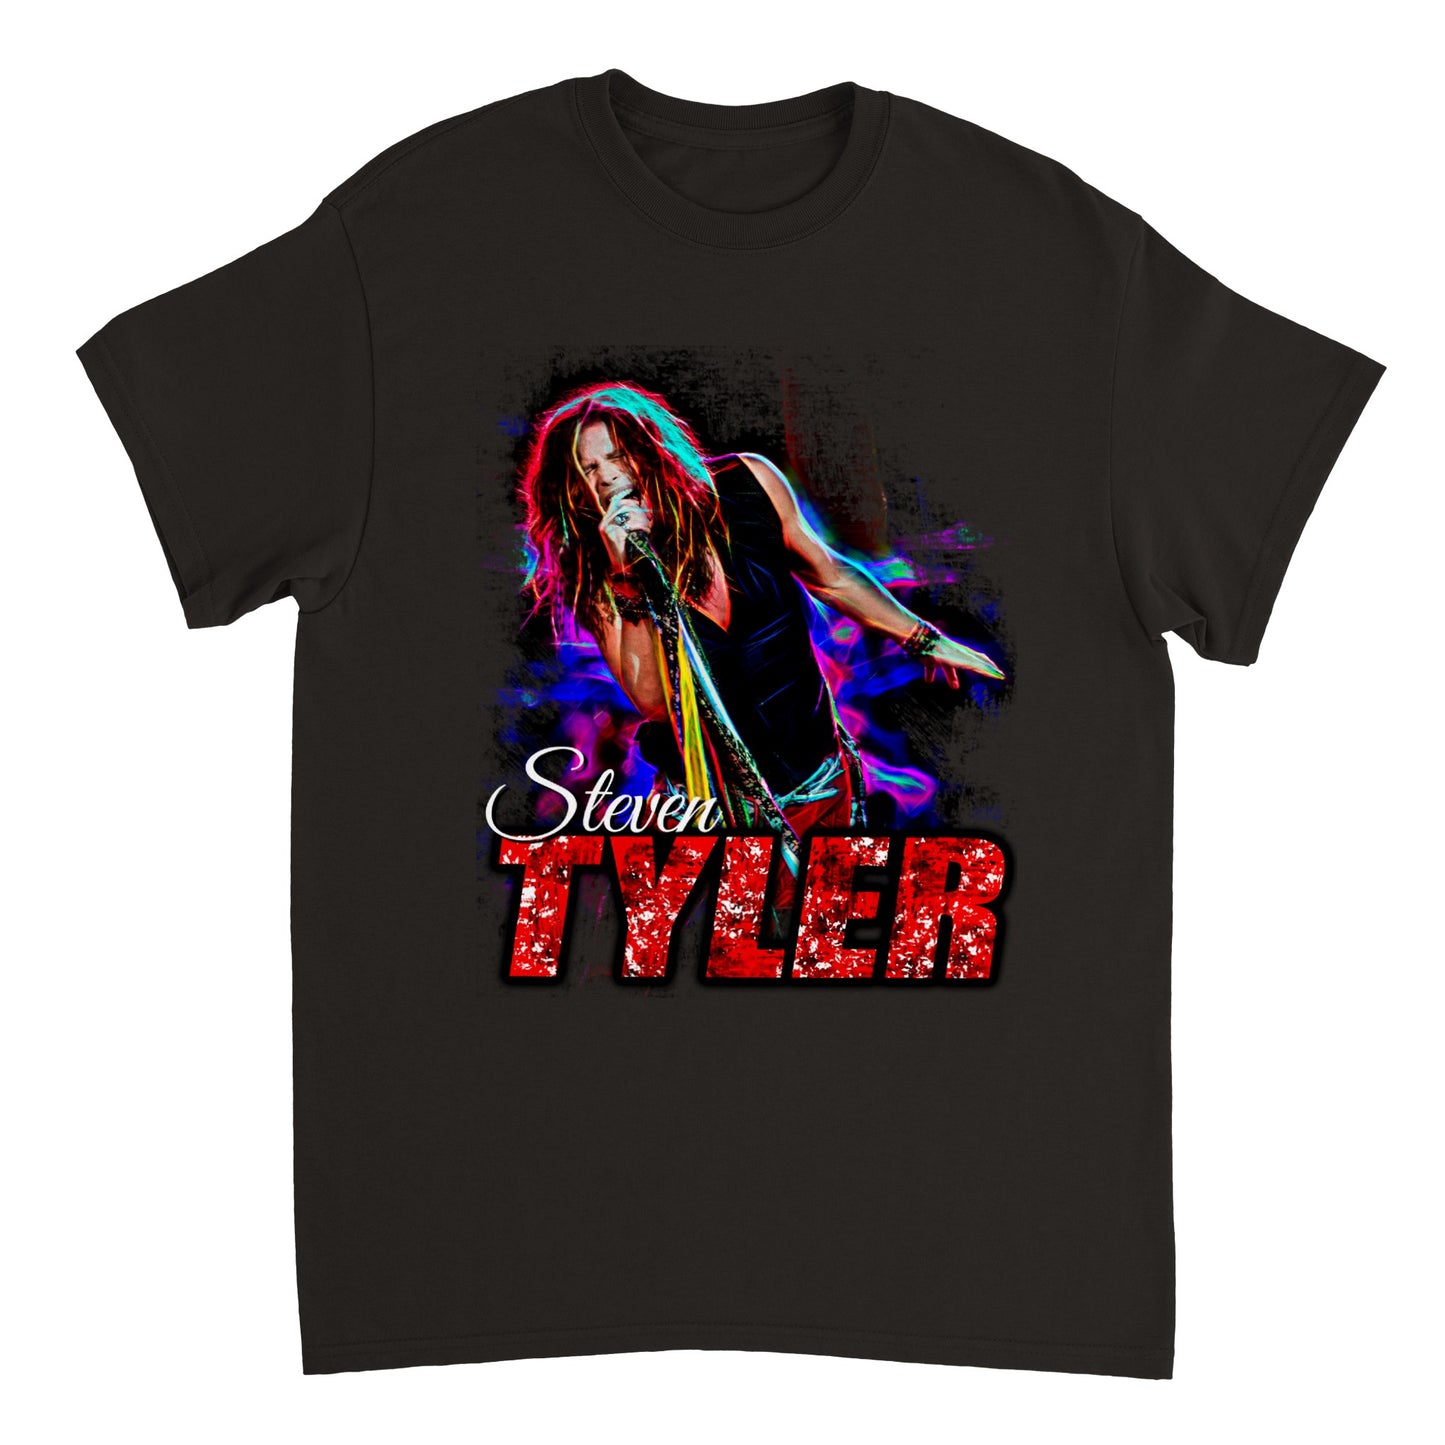 Steven Tyler Heavyweight Unisex Crewneck T-shirt